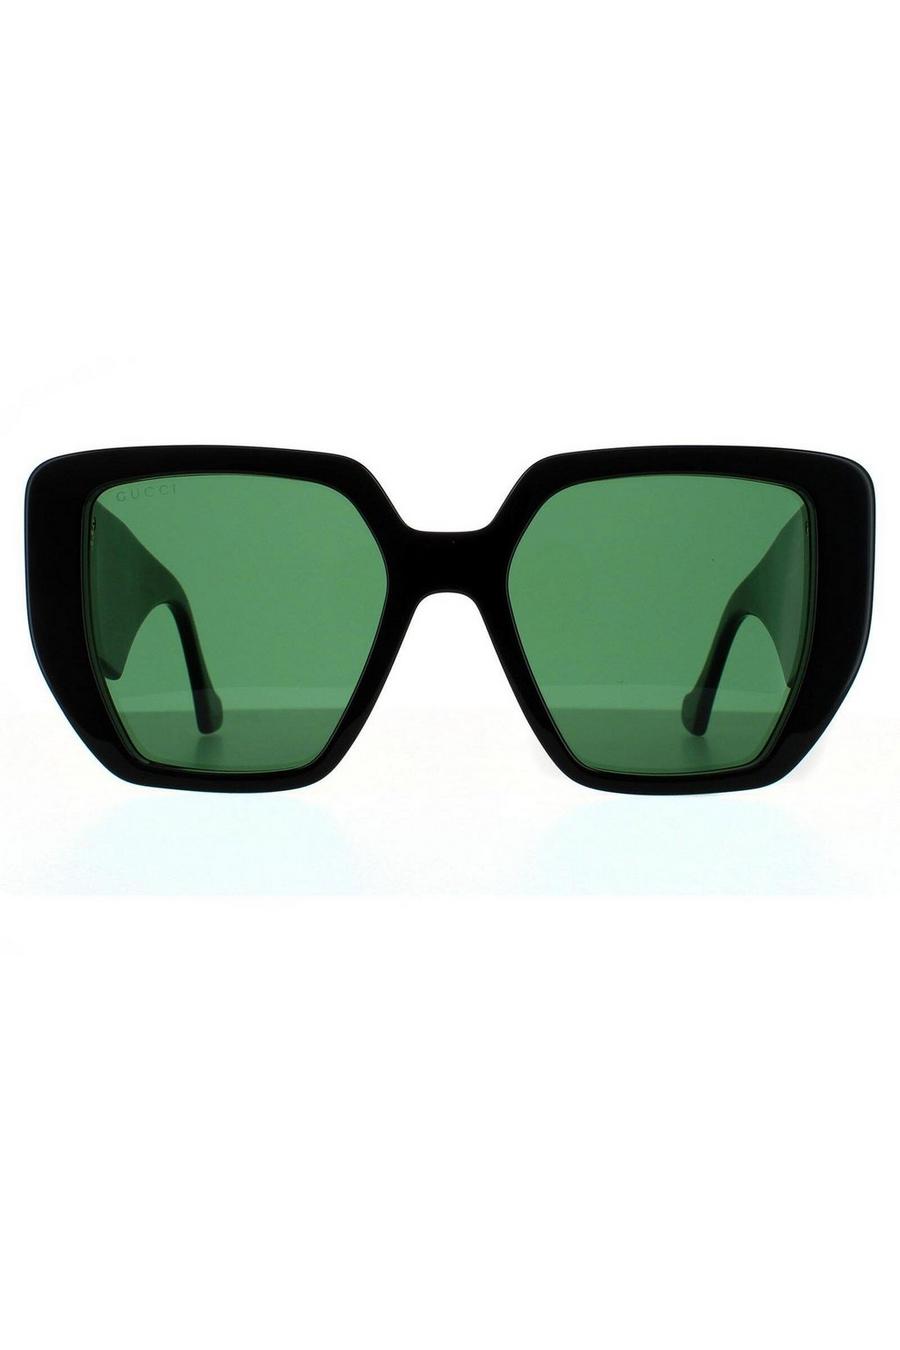 Square Black and Green Swirl Green Sunglasses